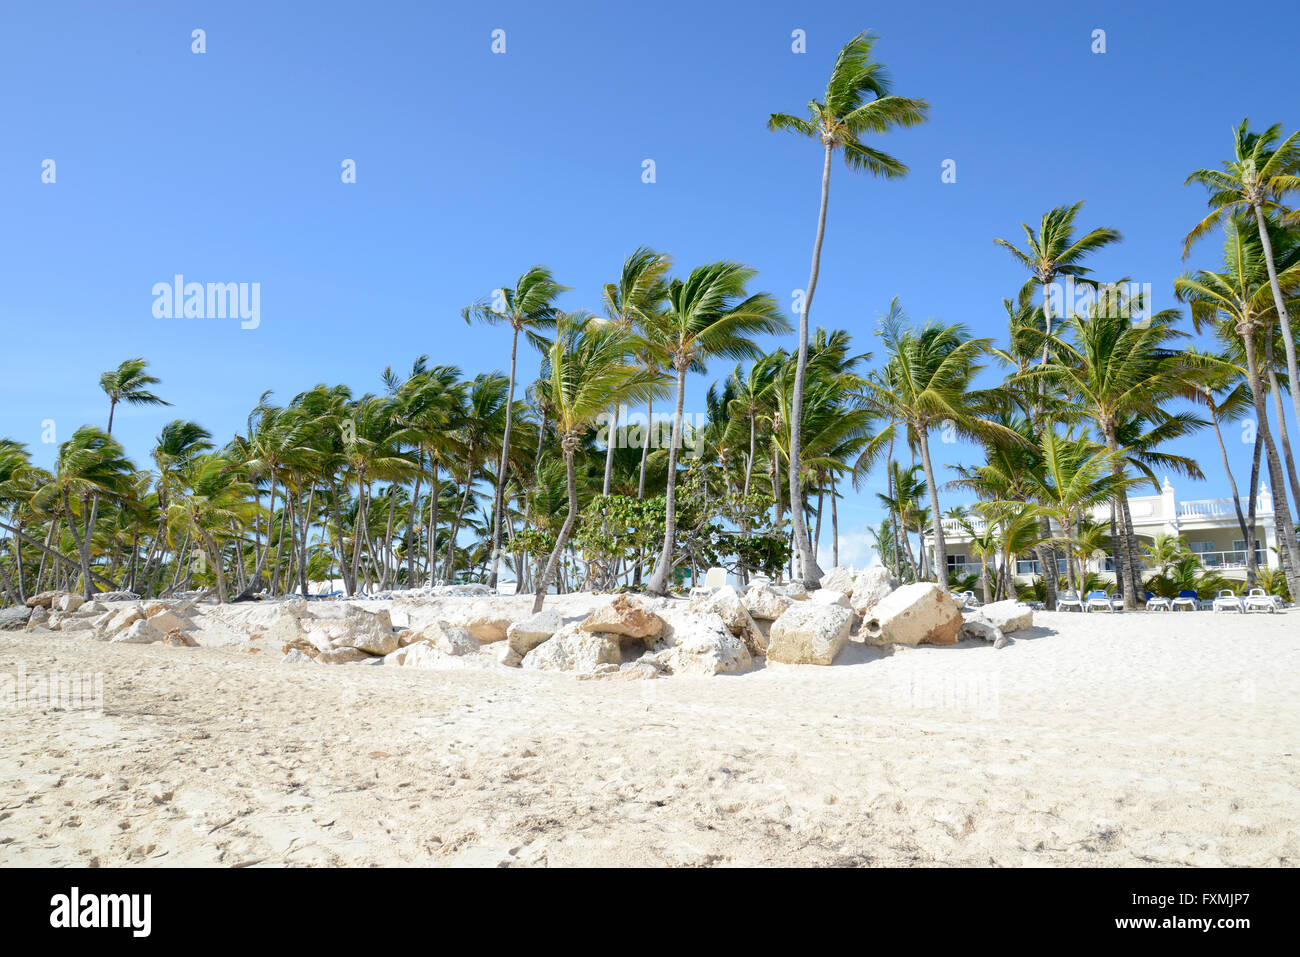 Molte palme da Bavaro Beach in Punta Cana nella Repubblica Dominicana. Le palme sono soffiando con una leggera brezza. Pentecoste Foto Stock